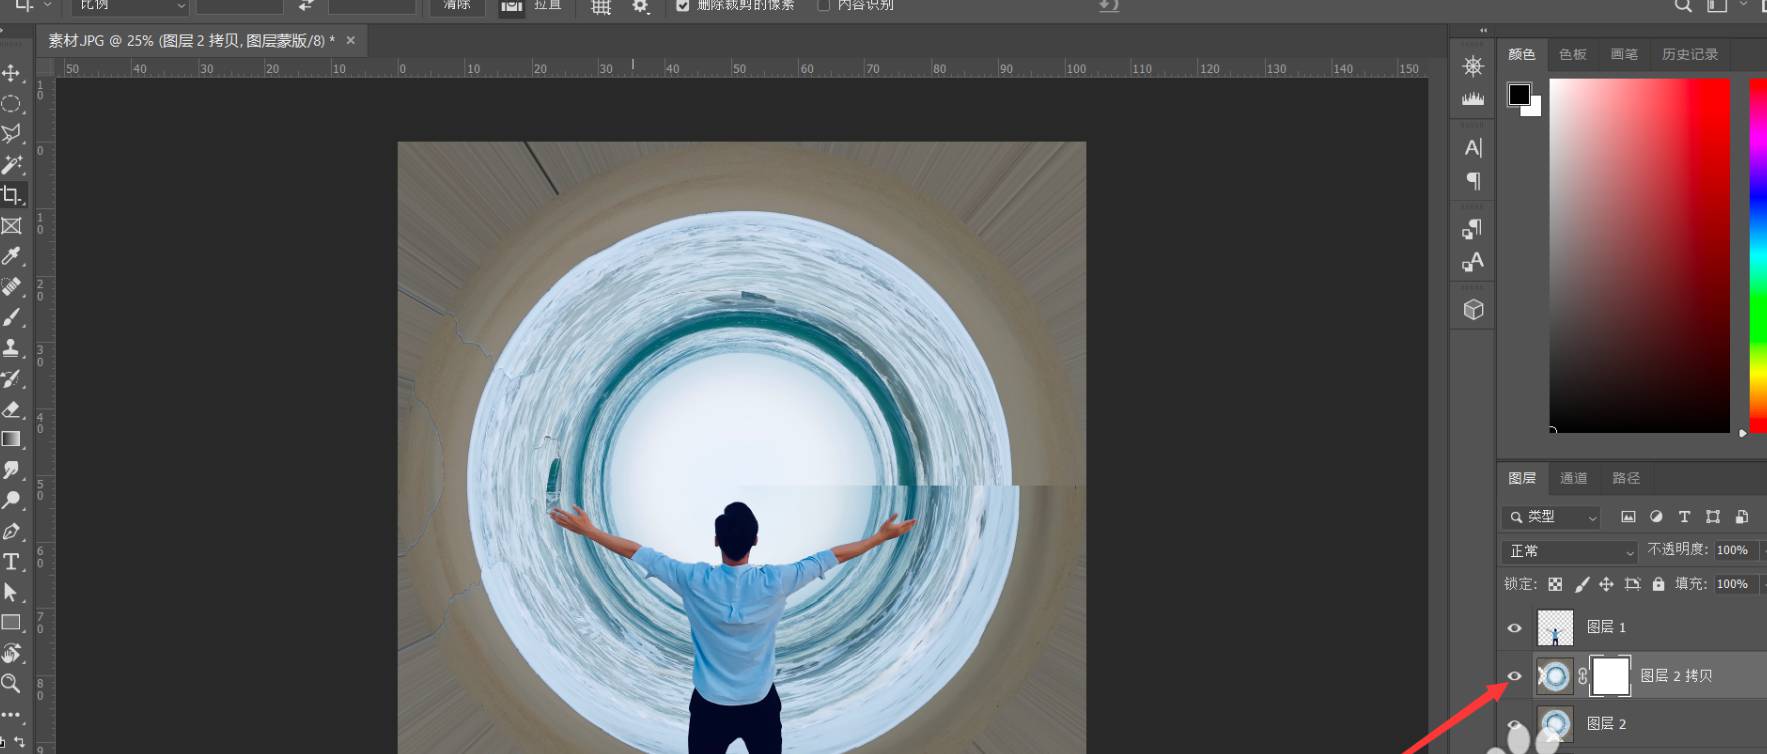 PS如何把照片制作成时空隧道效果?